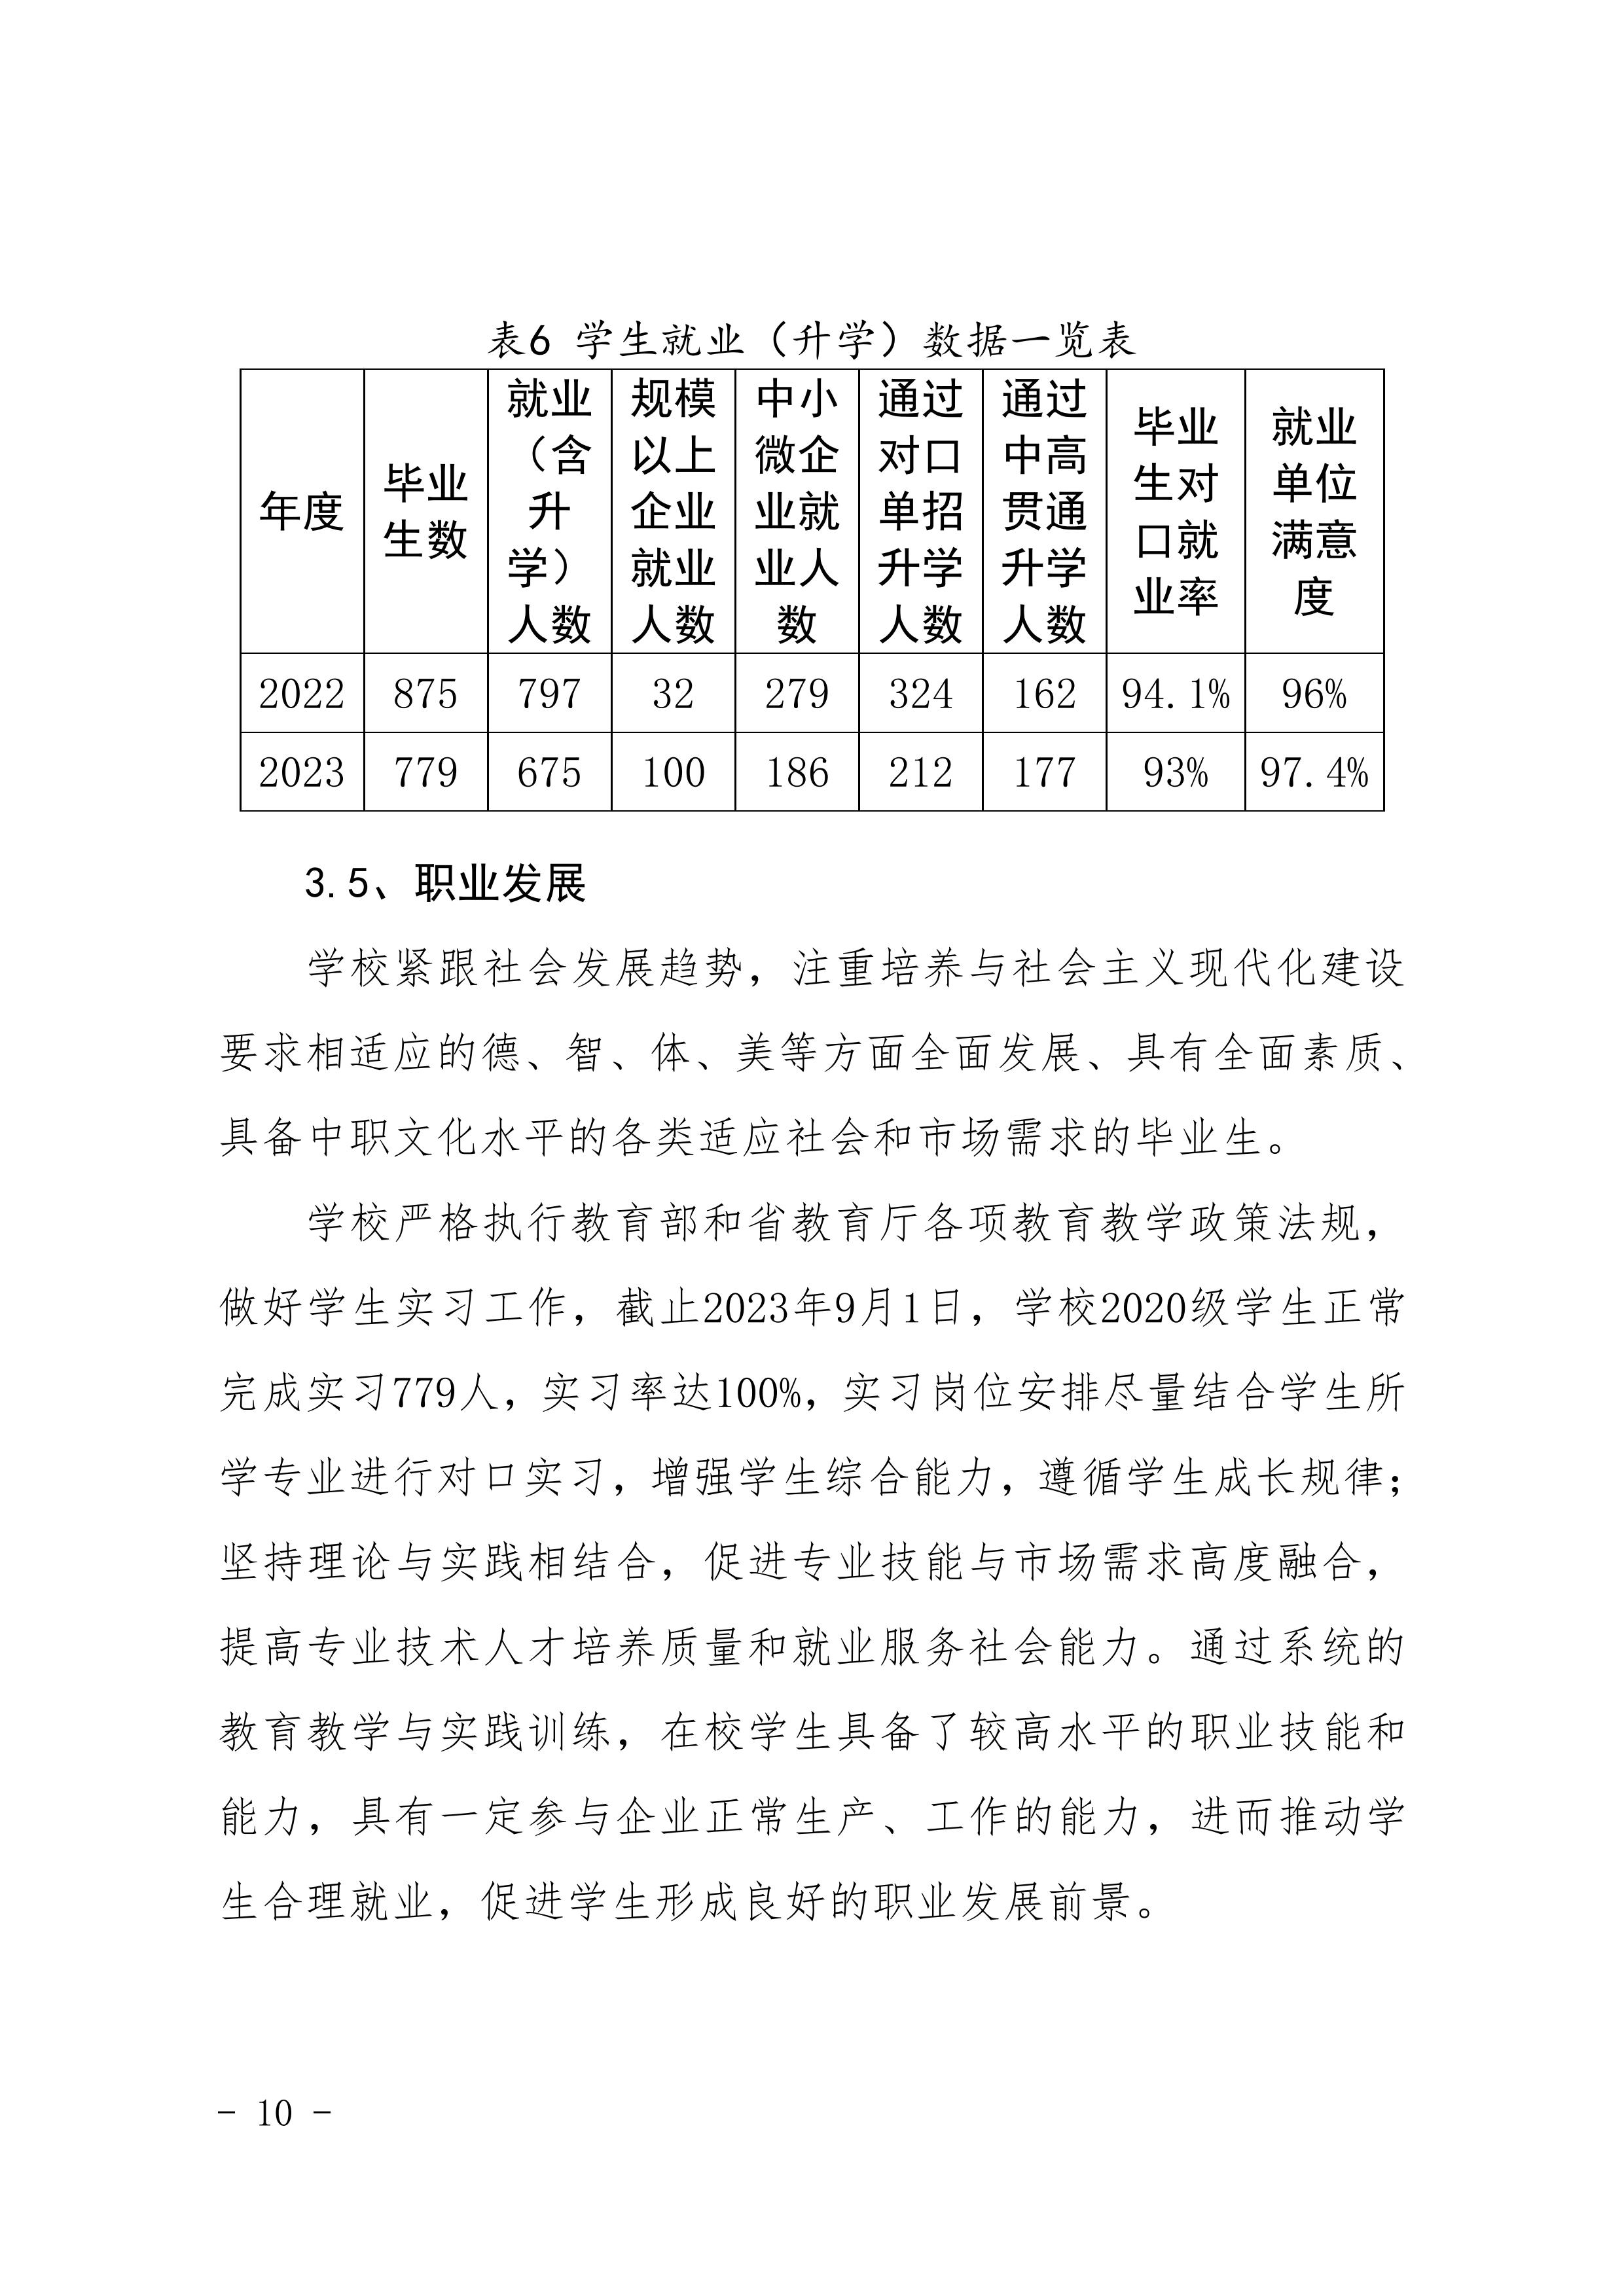 河南省民政学校职业教育质量报告（2023年度）发布版_13.jpg